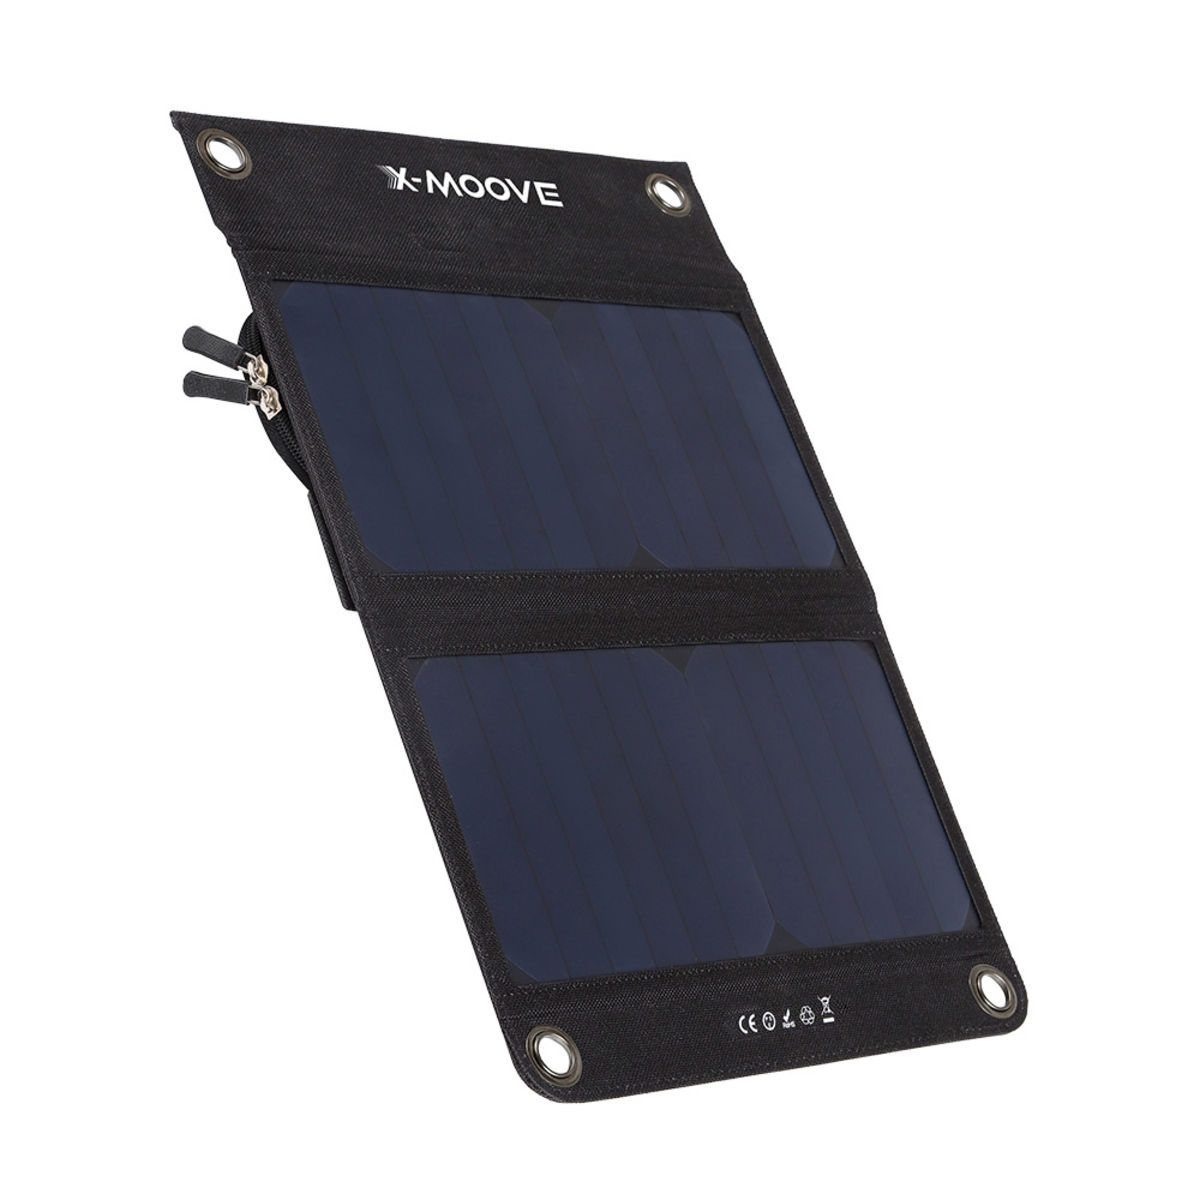 Panneau solaire + batterie externe X-Moove Solargo Trek 10000 mAh - 2 ports USB